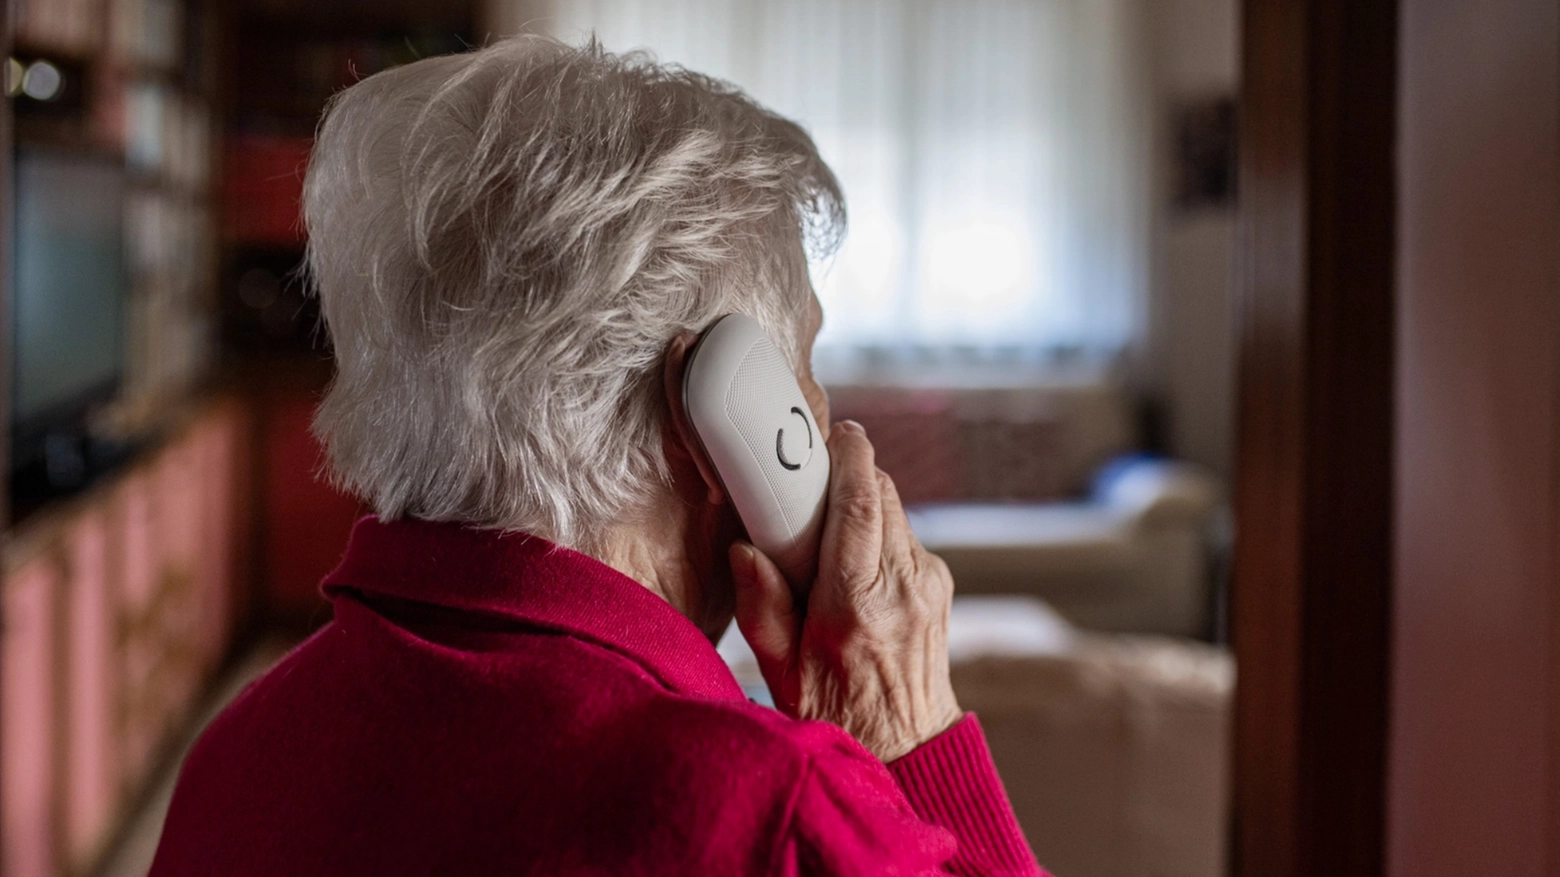 Aumentano le truffe agli anziani, soprattutto quelle telefoniche